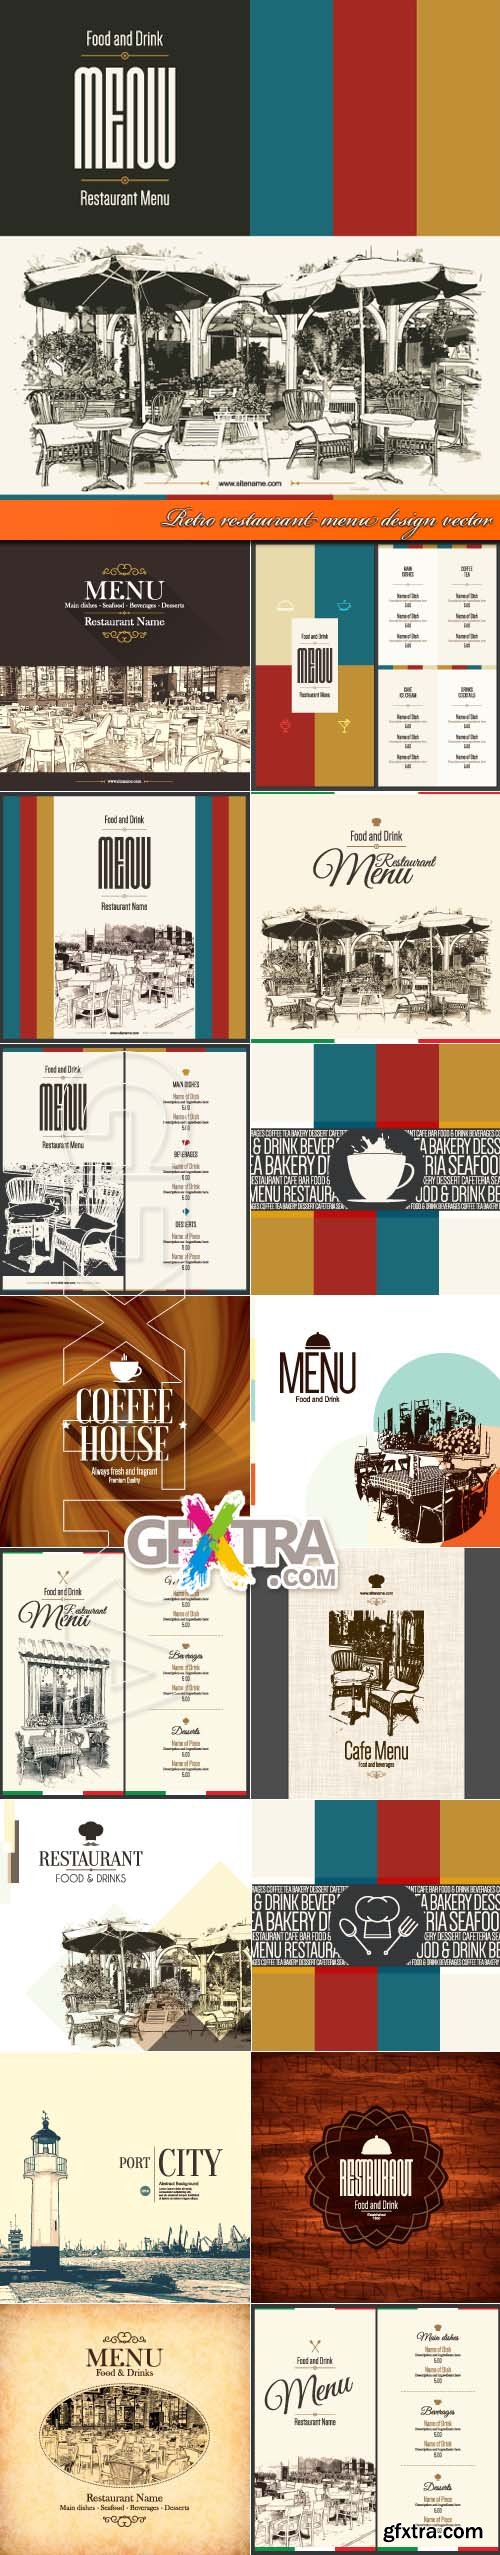 Retro restaurant menu design vector